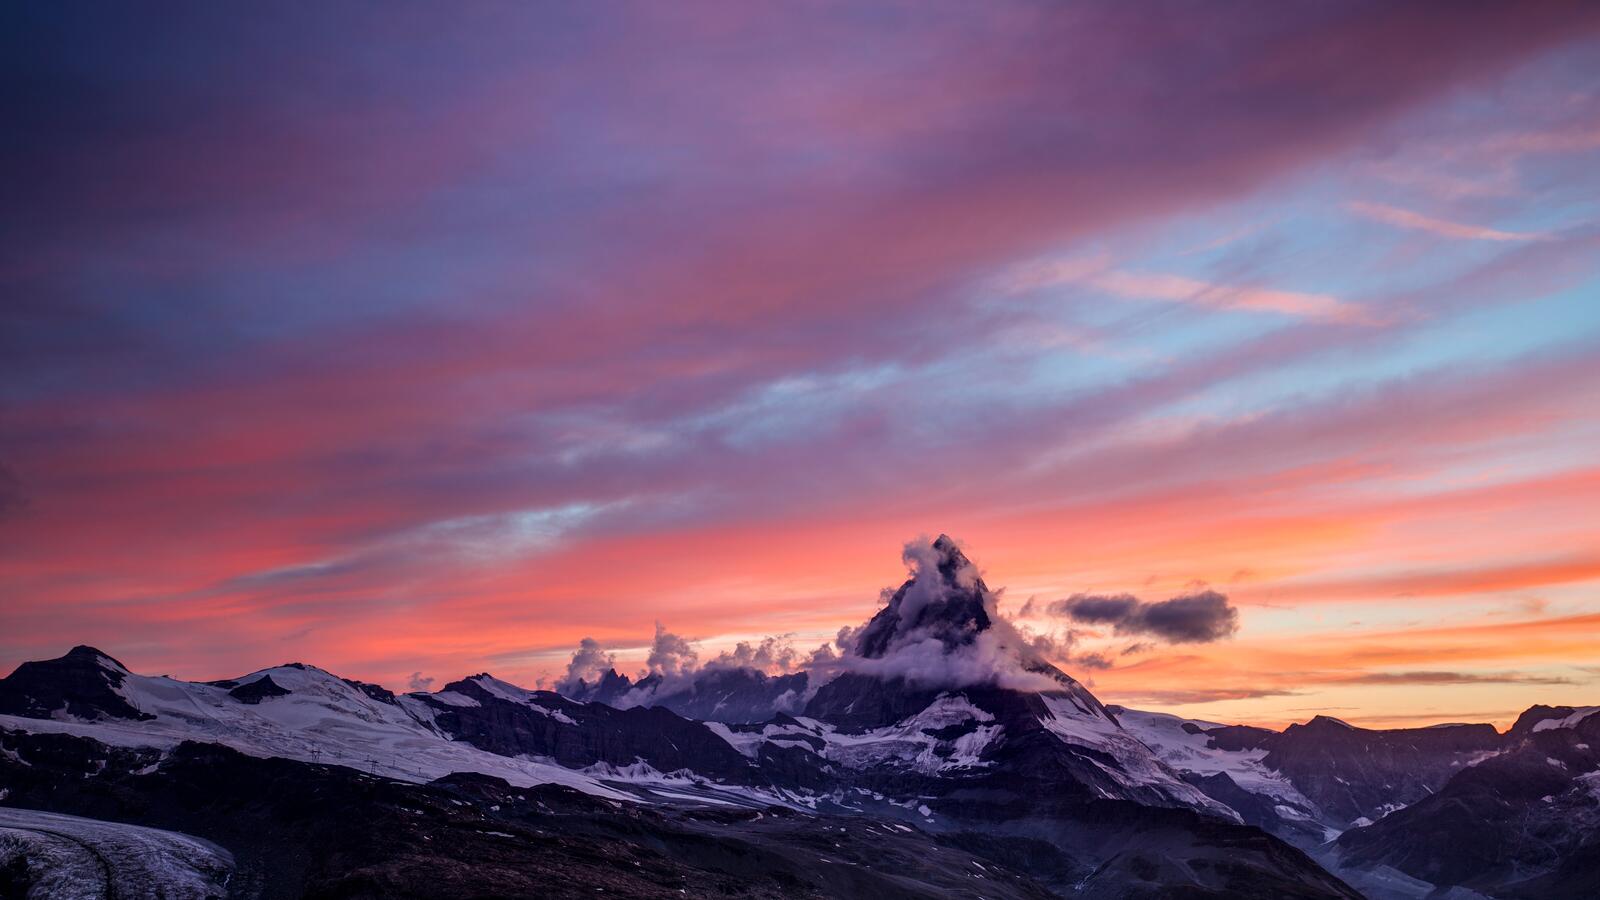 Бесплатное фото Удивительный пейзаж с горой на закате дня